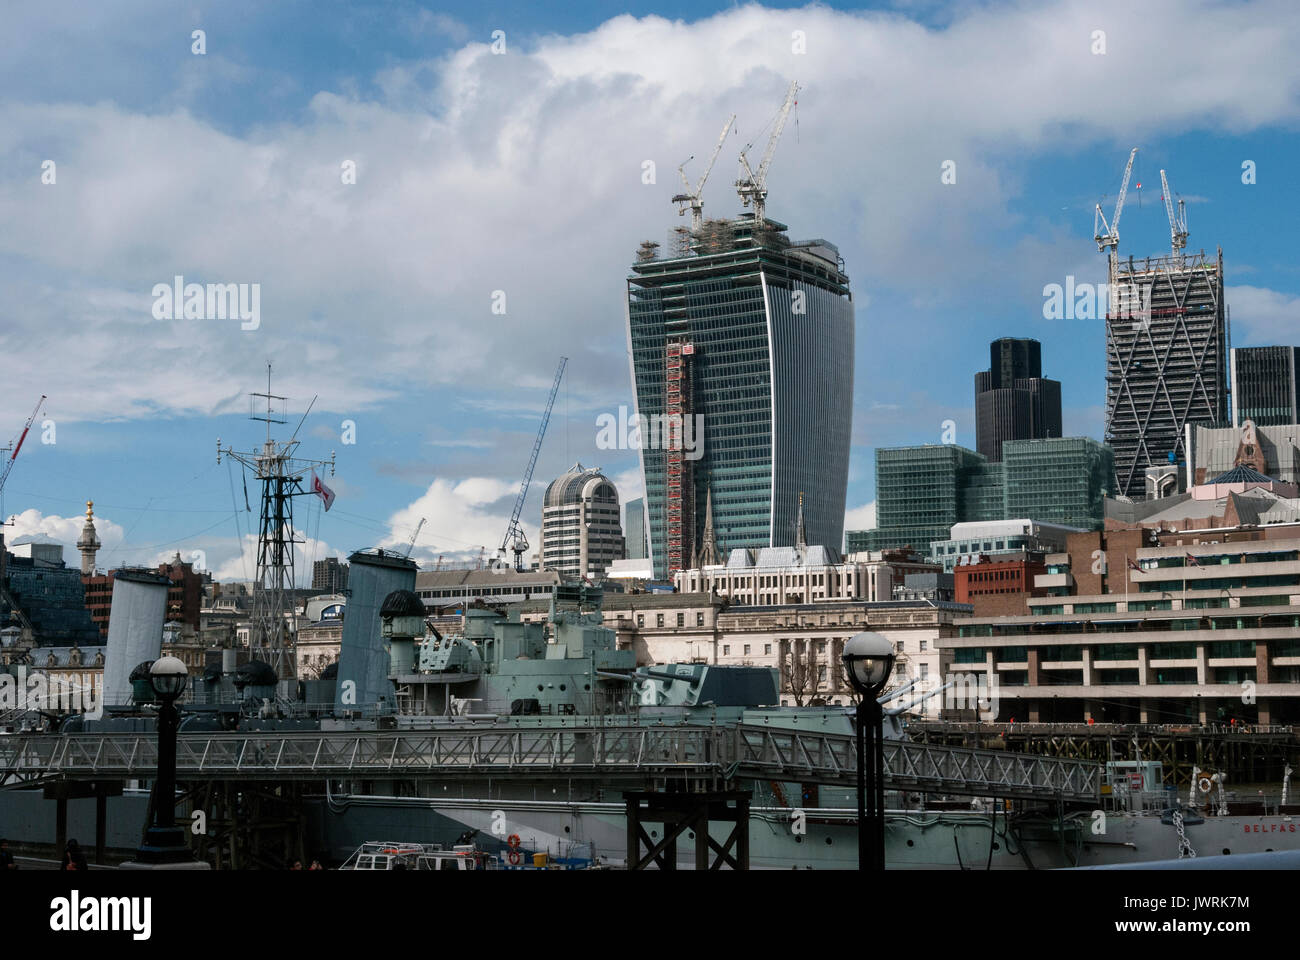 Londres Angleterre, la Tamise, le pont au cuirassé de la Royal Navy, Cranes, quartier financier, économique, affaires, Frenchurch Street, commercial Banque D'Images